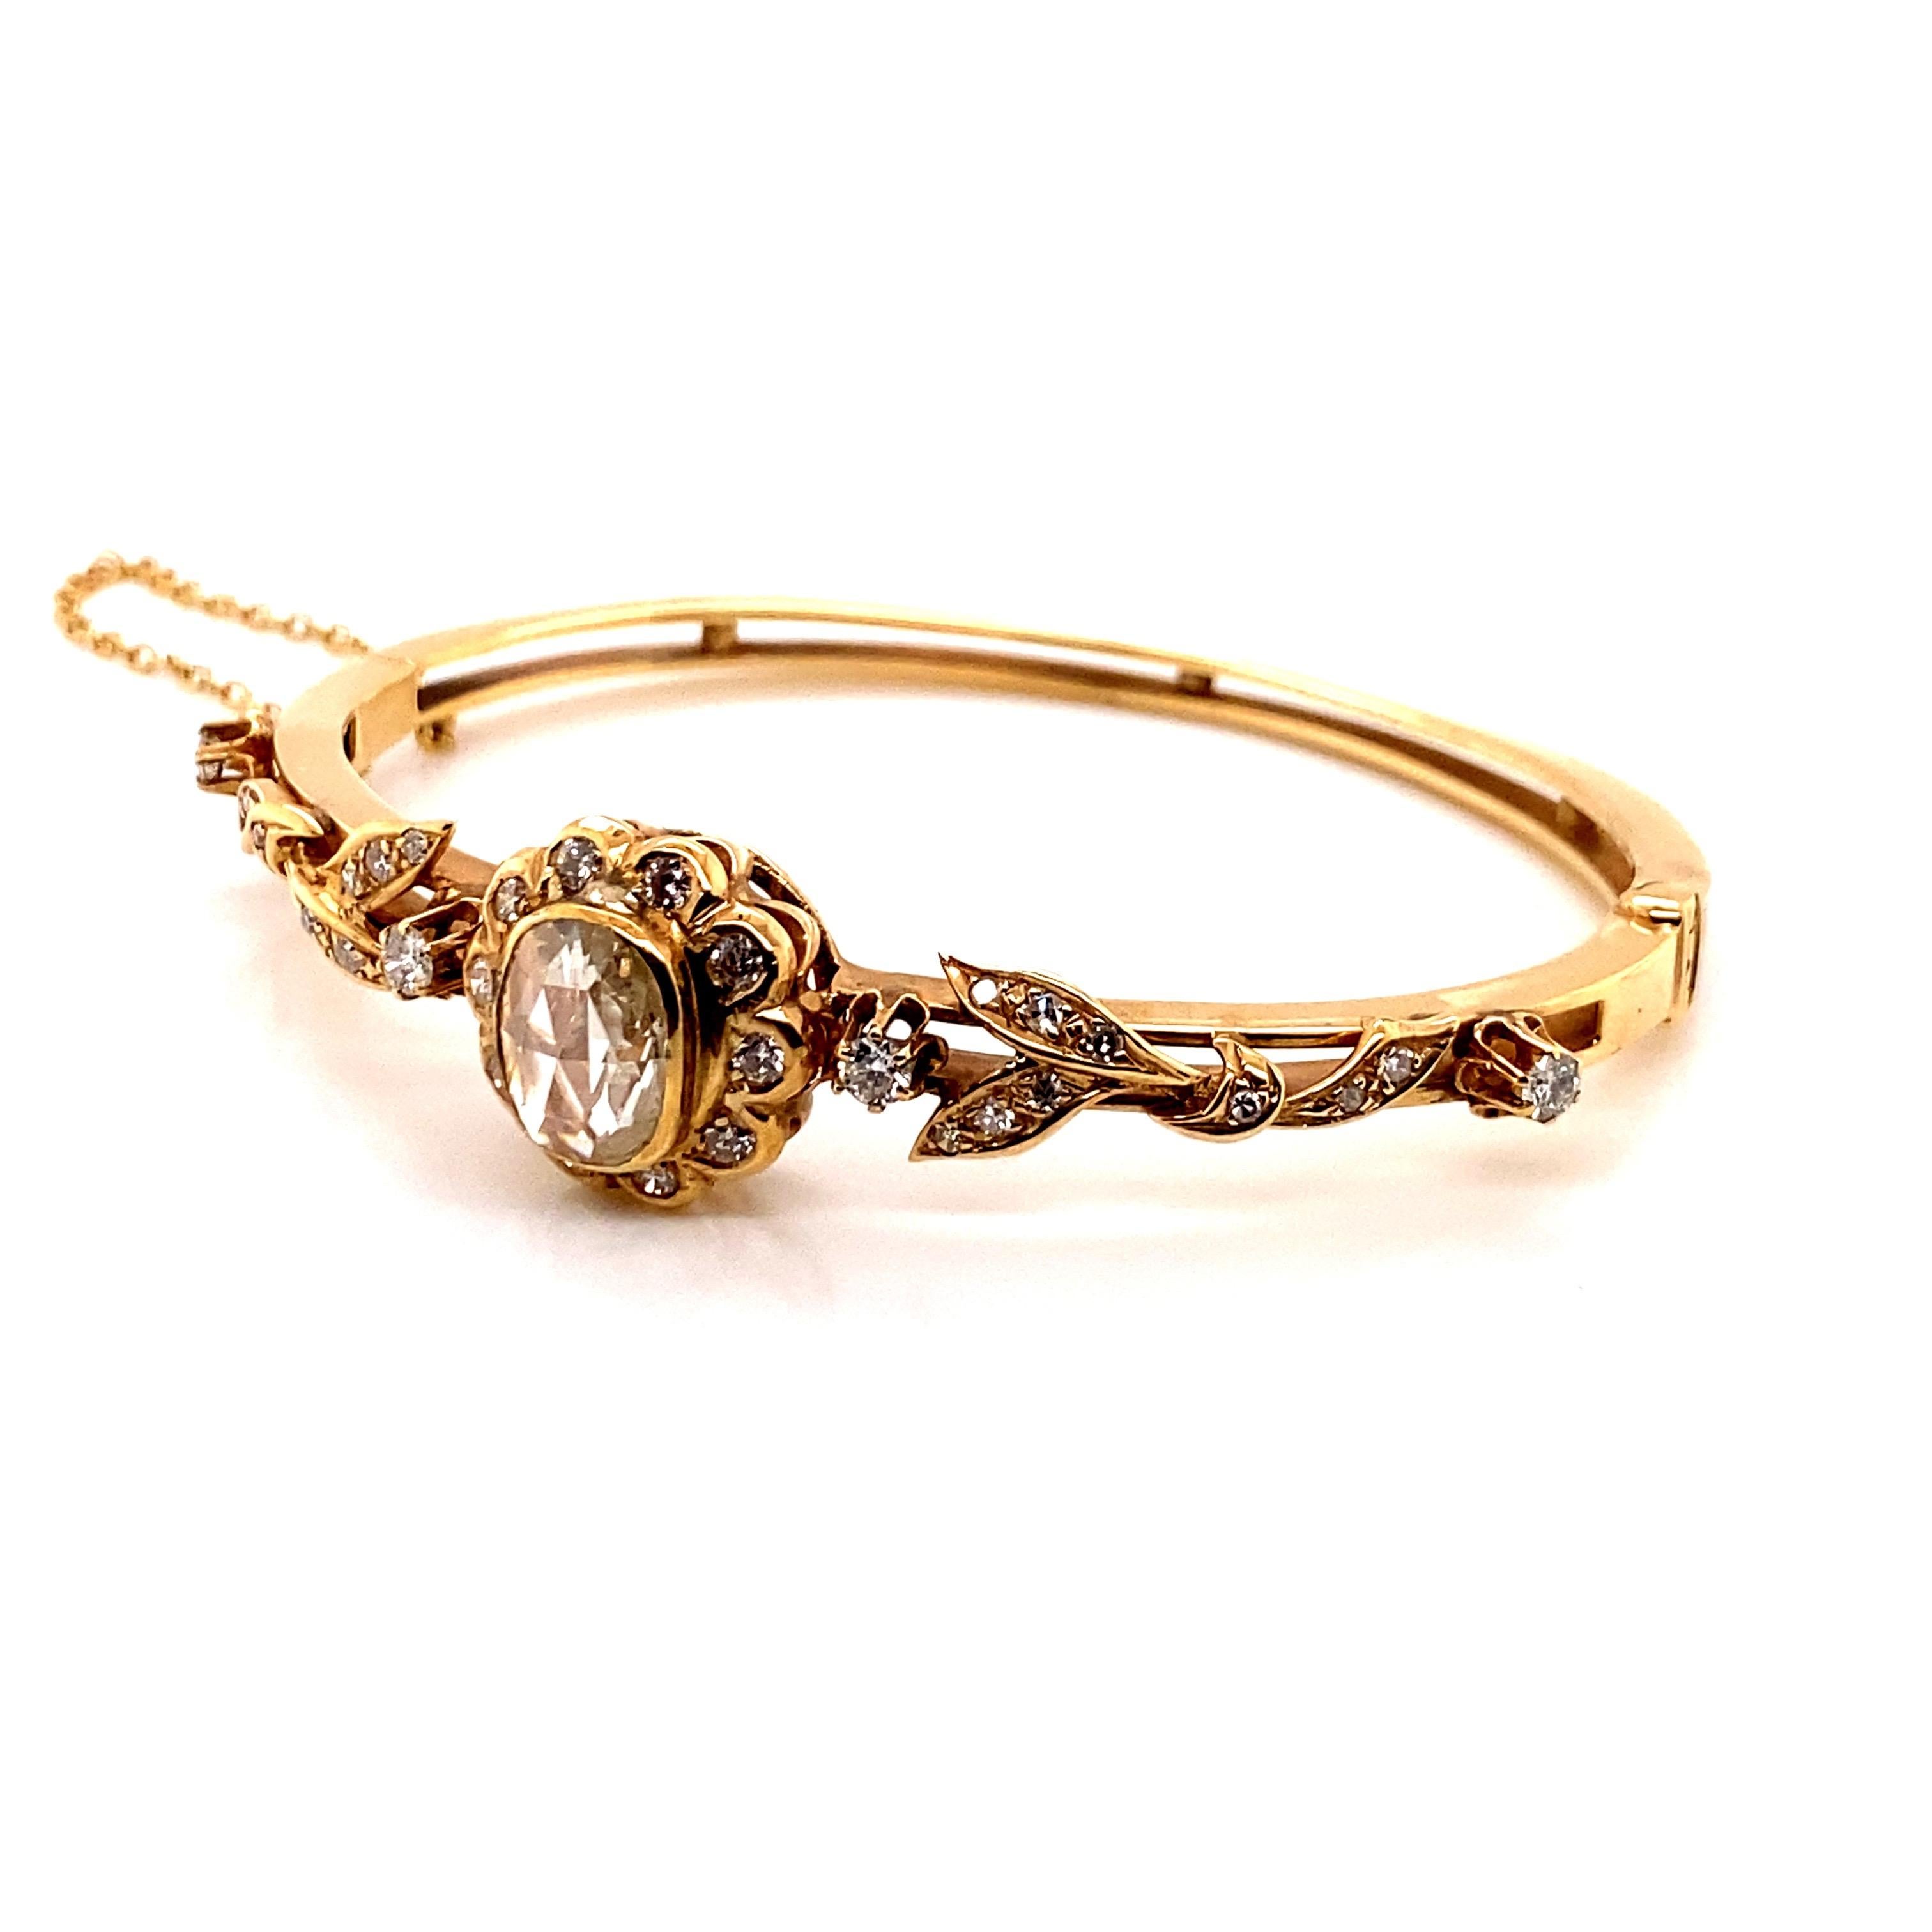 Vintage 14K Yellow Gold Victorian Reproduction Rose Cut Diamond Bangle - Le bracelet contient un diamant rose de forme coussin qui mesure approximativement 10 x 8 x 2.5mm et pèse approximativement 1.20ct. La qualité est de couleur J et de clarté I1.